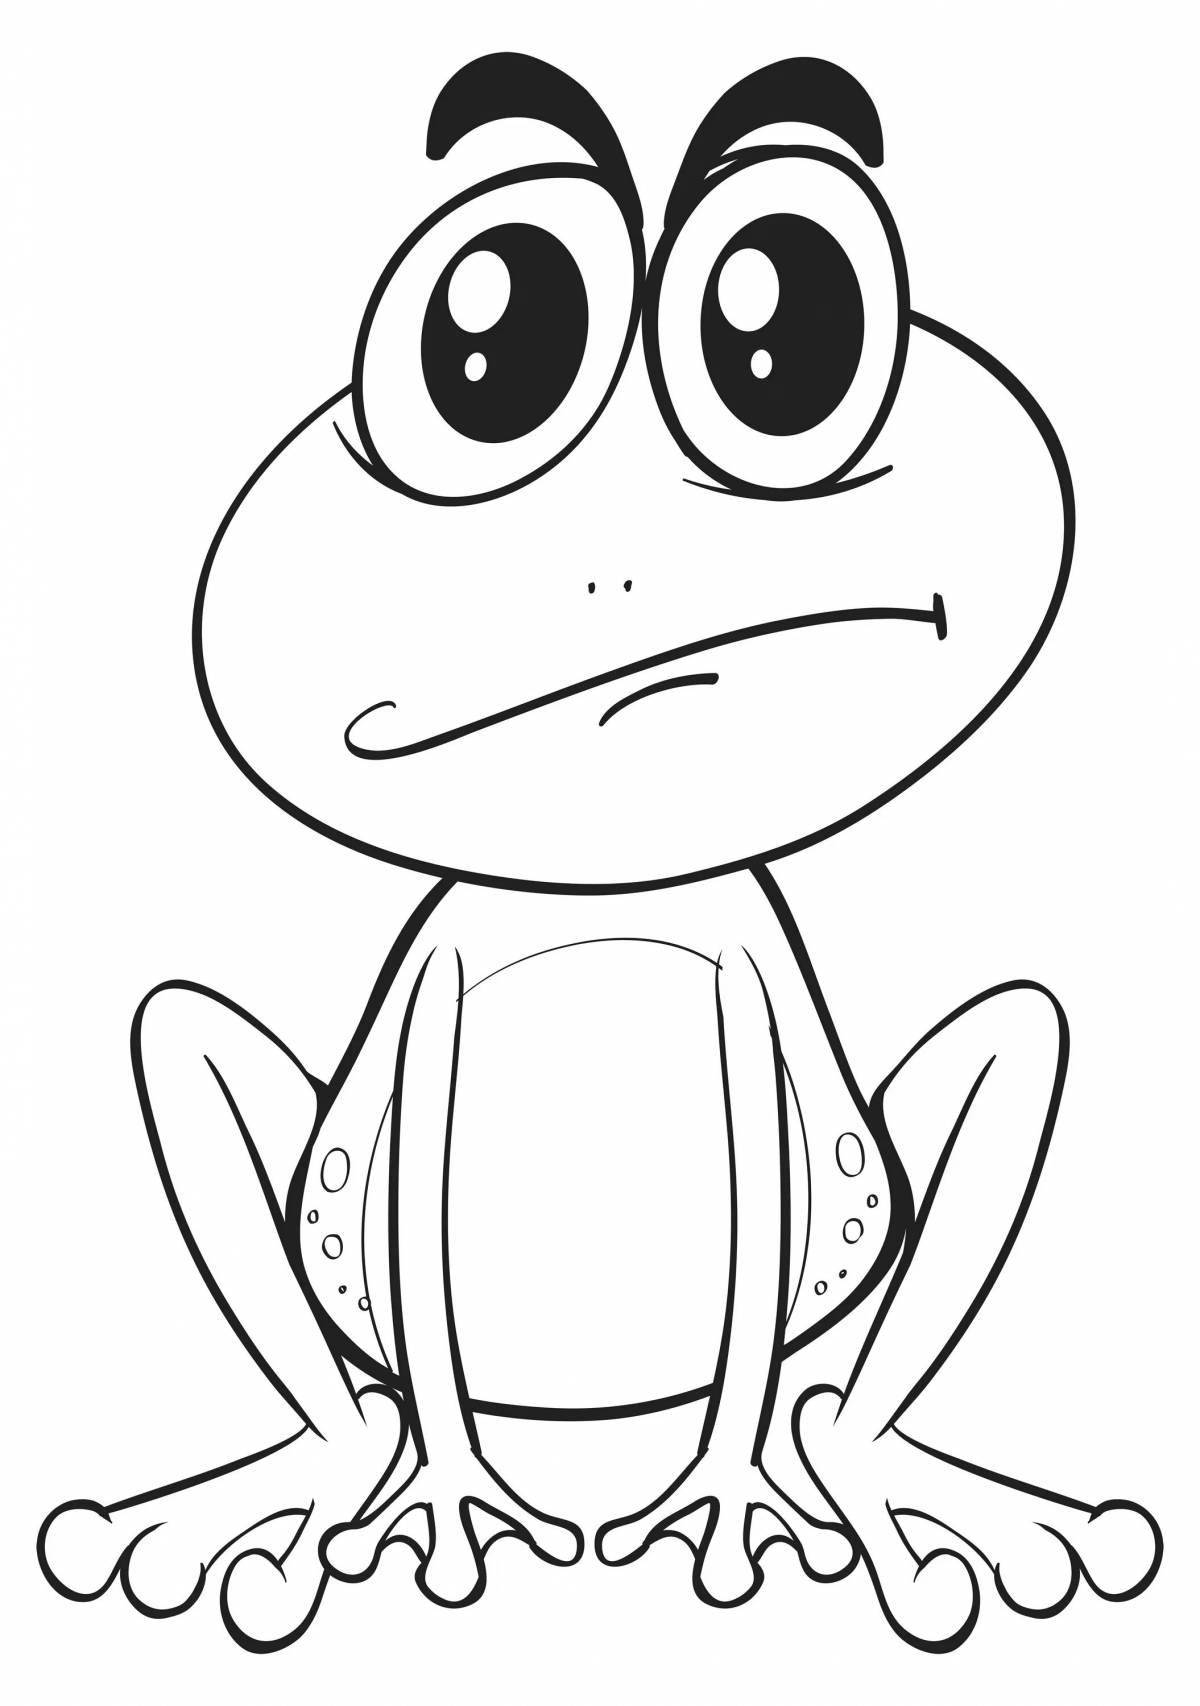 Froggy fun coloring